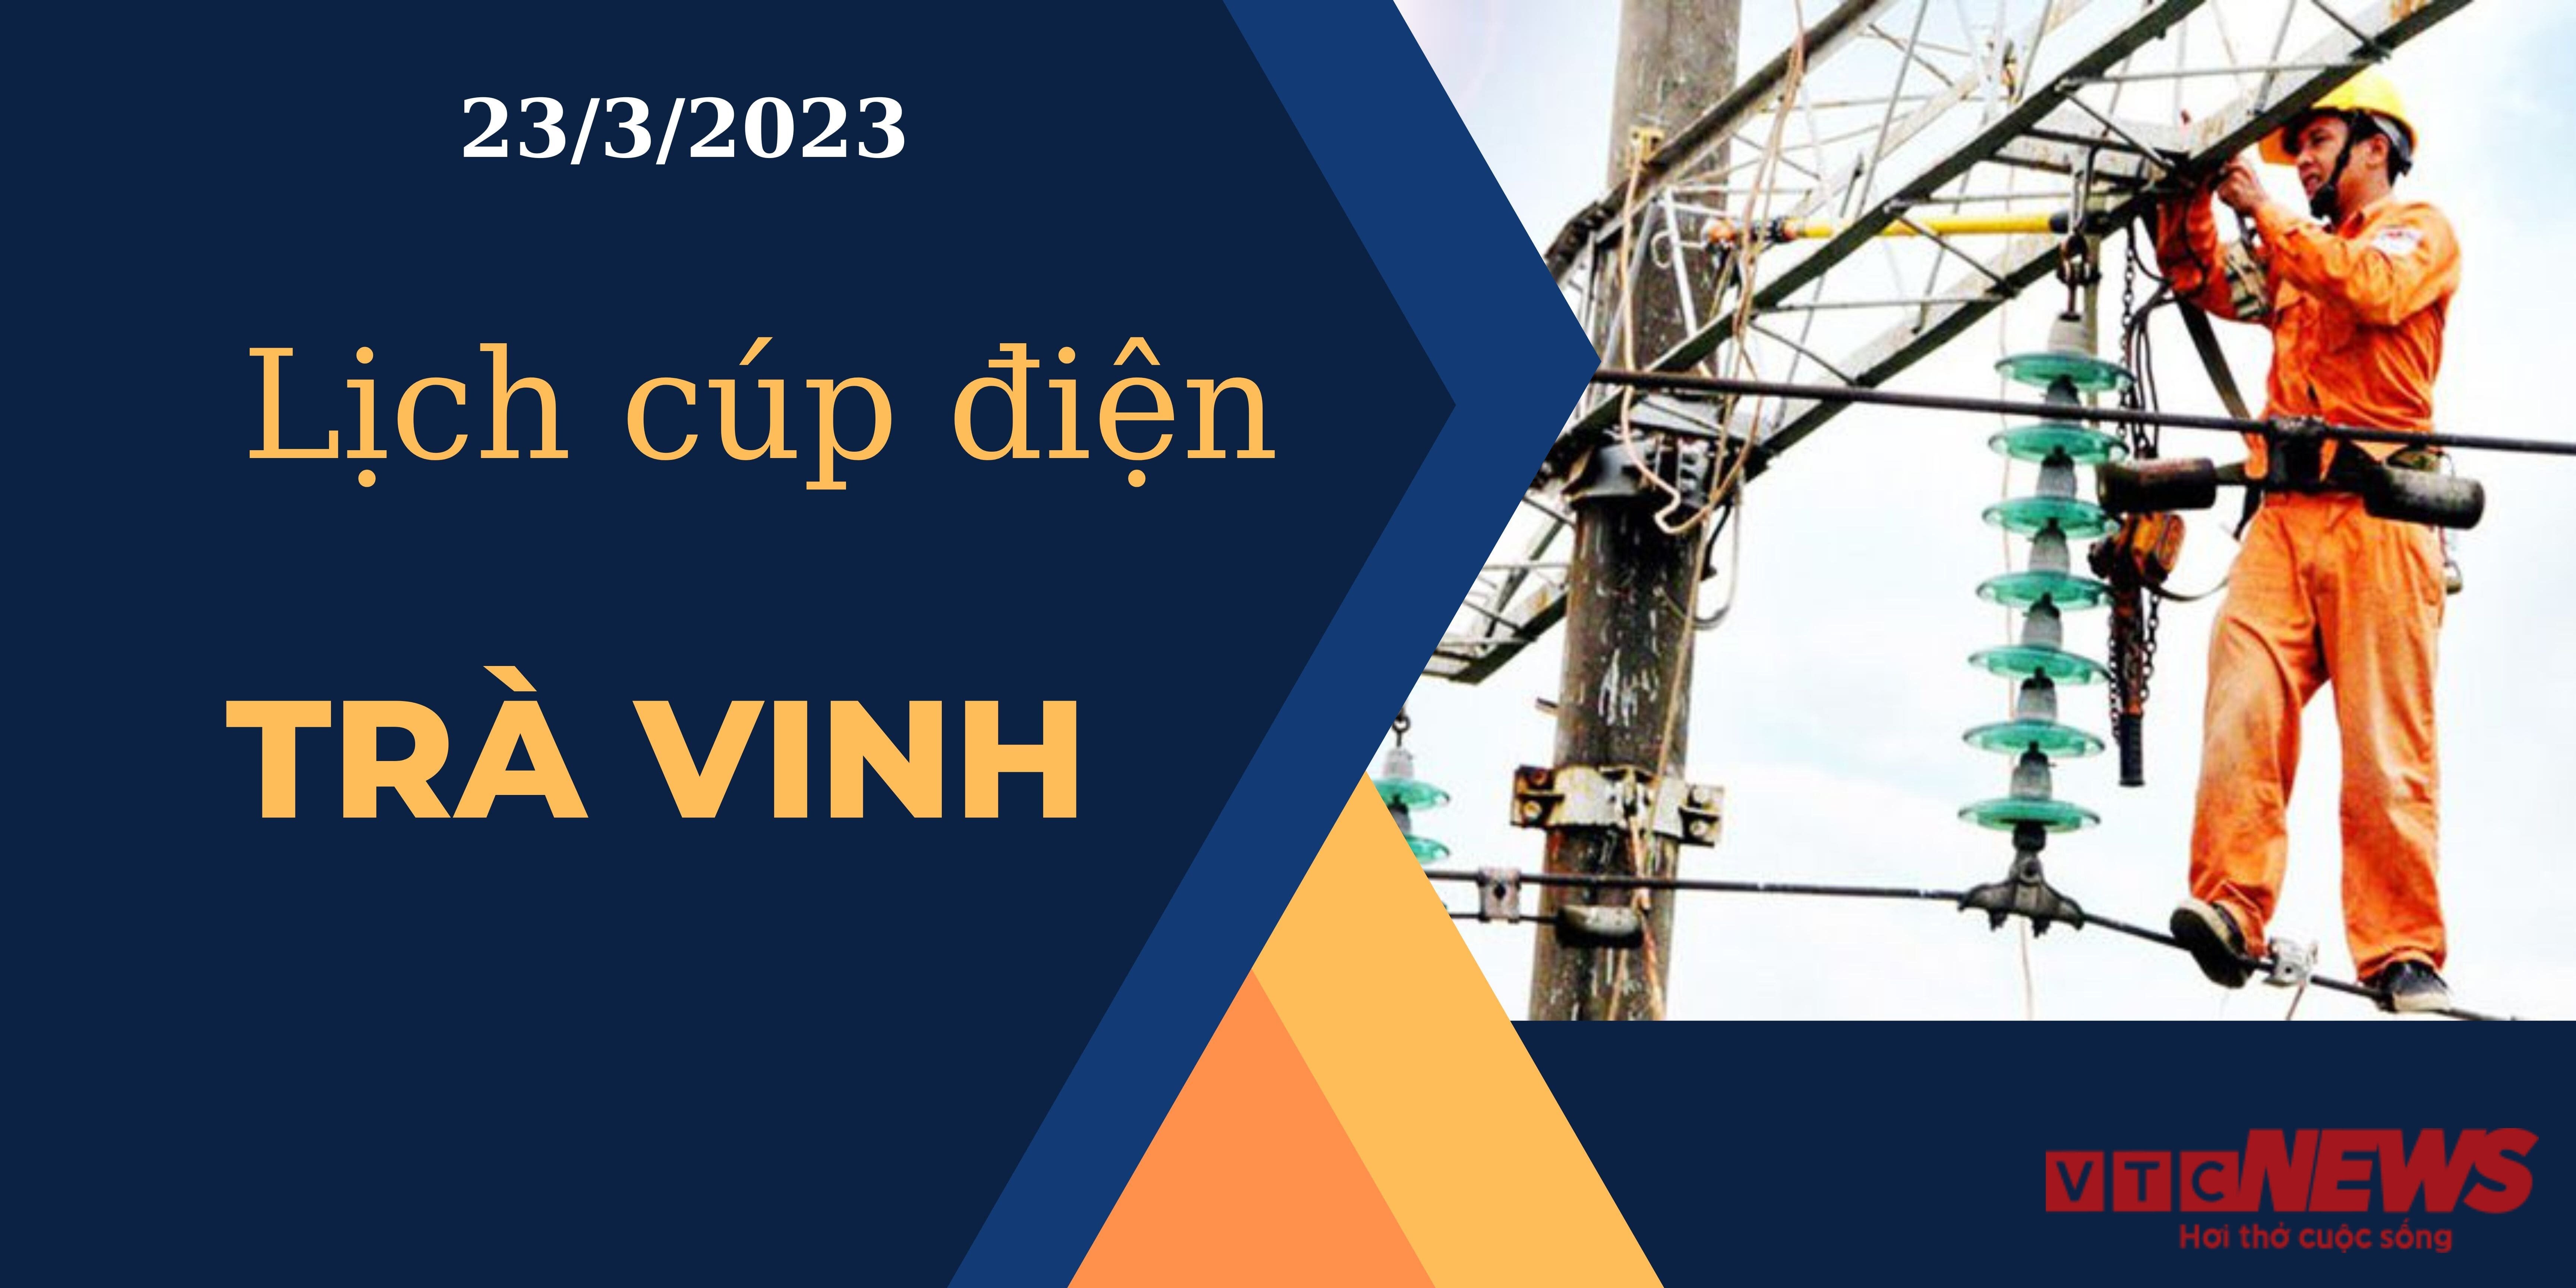 Lịch cúp điện hôm nay tại Trà Vinh ngày 23/03/2023  - 1